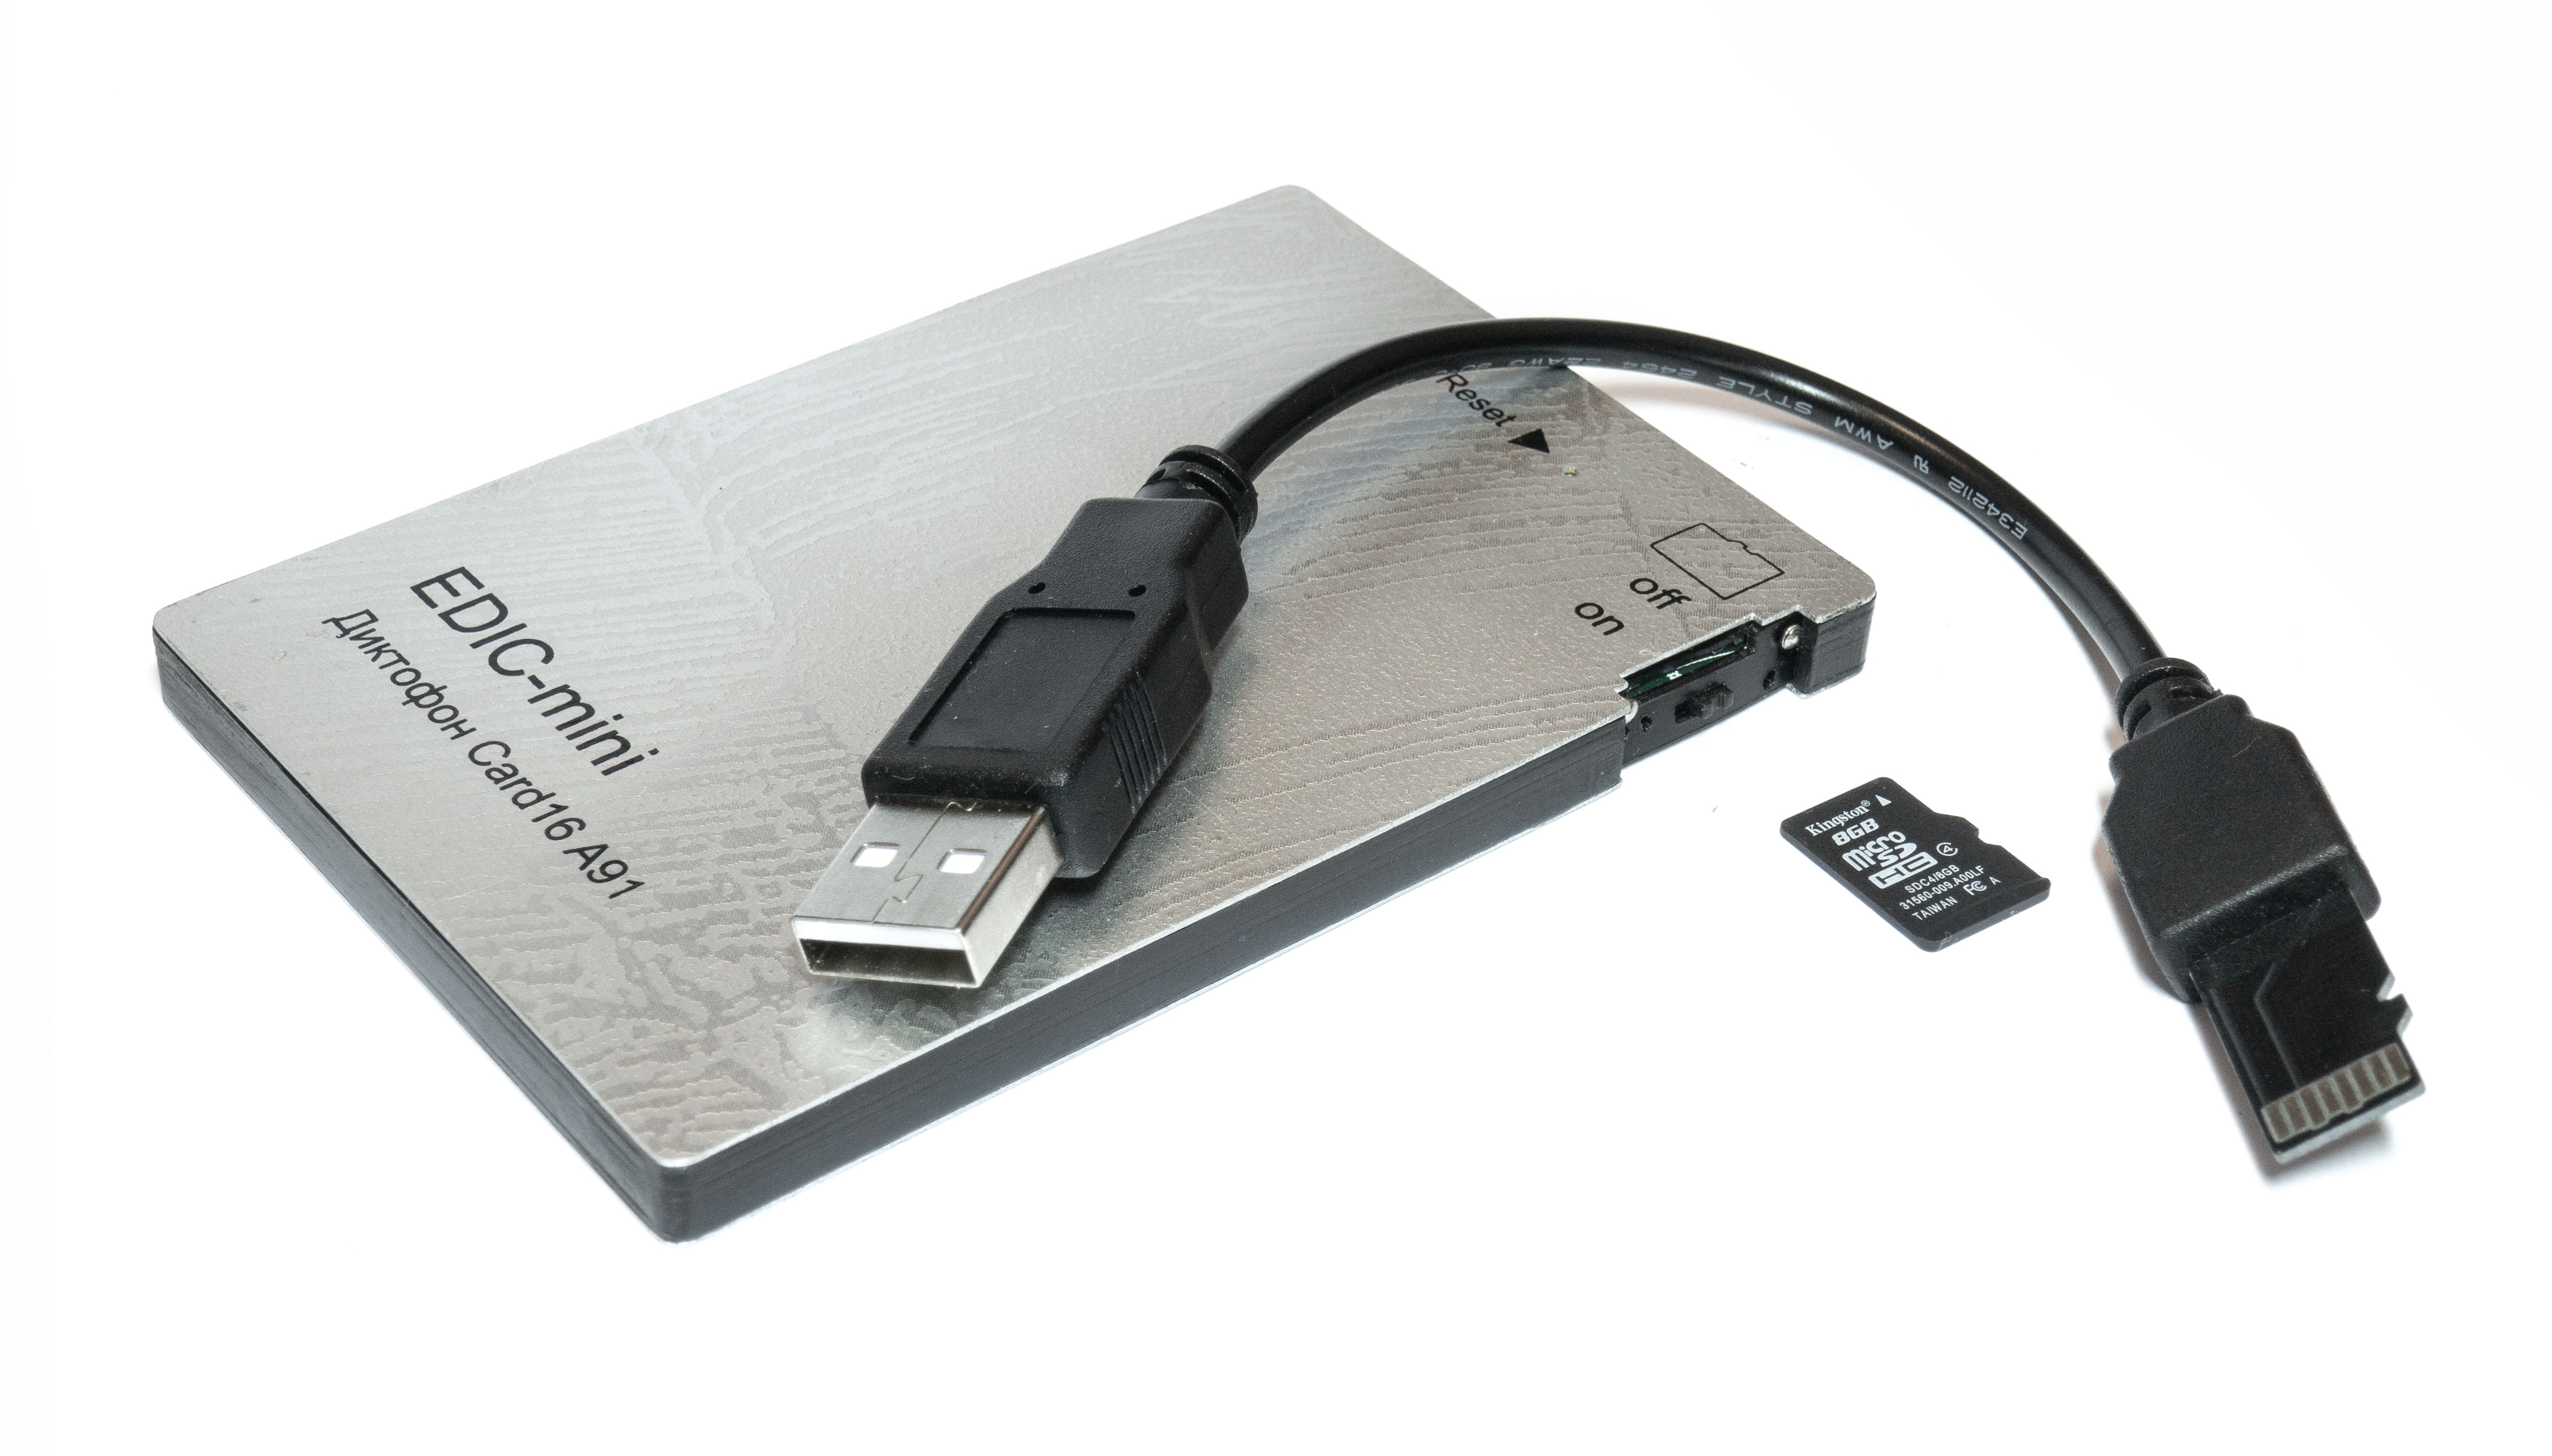 Все Телесистемы EM Card16 А91 (металл, размер 7*65*97мм, вес 72г, автономность до 1000ч, аккумулятор) видеонаблюдения в магазине Vidos Group